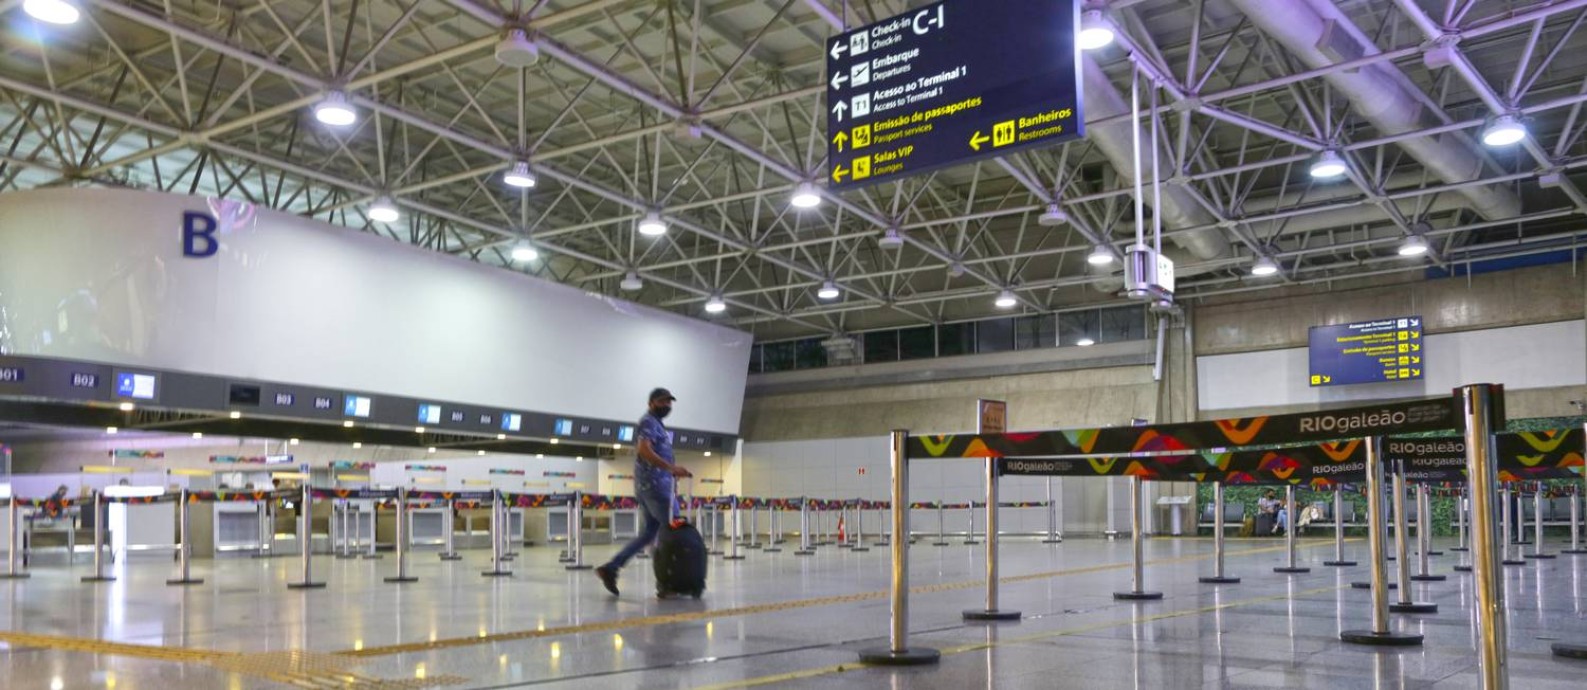 Movimento baixíssimo no aeroporto internacional Galeão-Tom Jobim: Rio perdeu passageiros Foto: Marcia Foletto / Agência O Globo